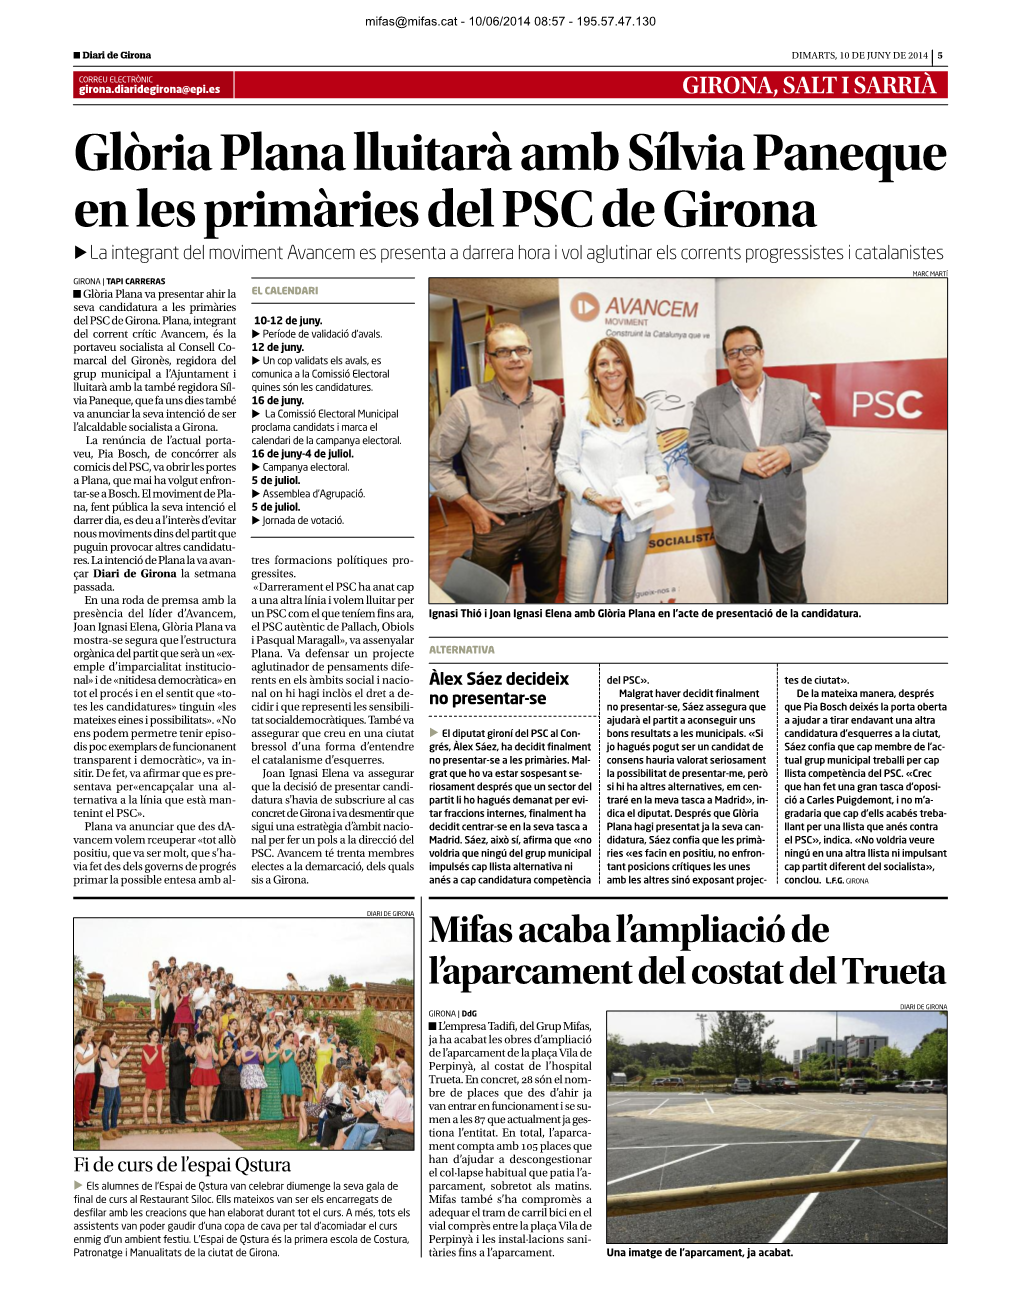 Diari De Girona 10/06/2014